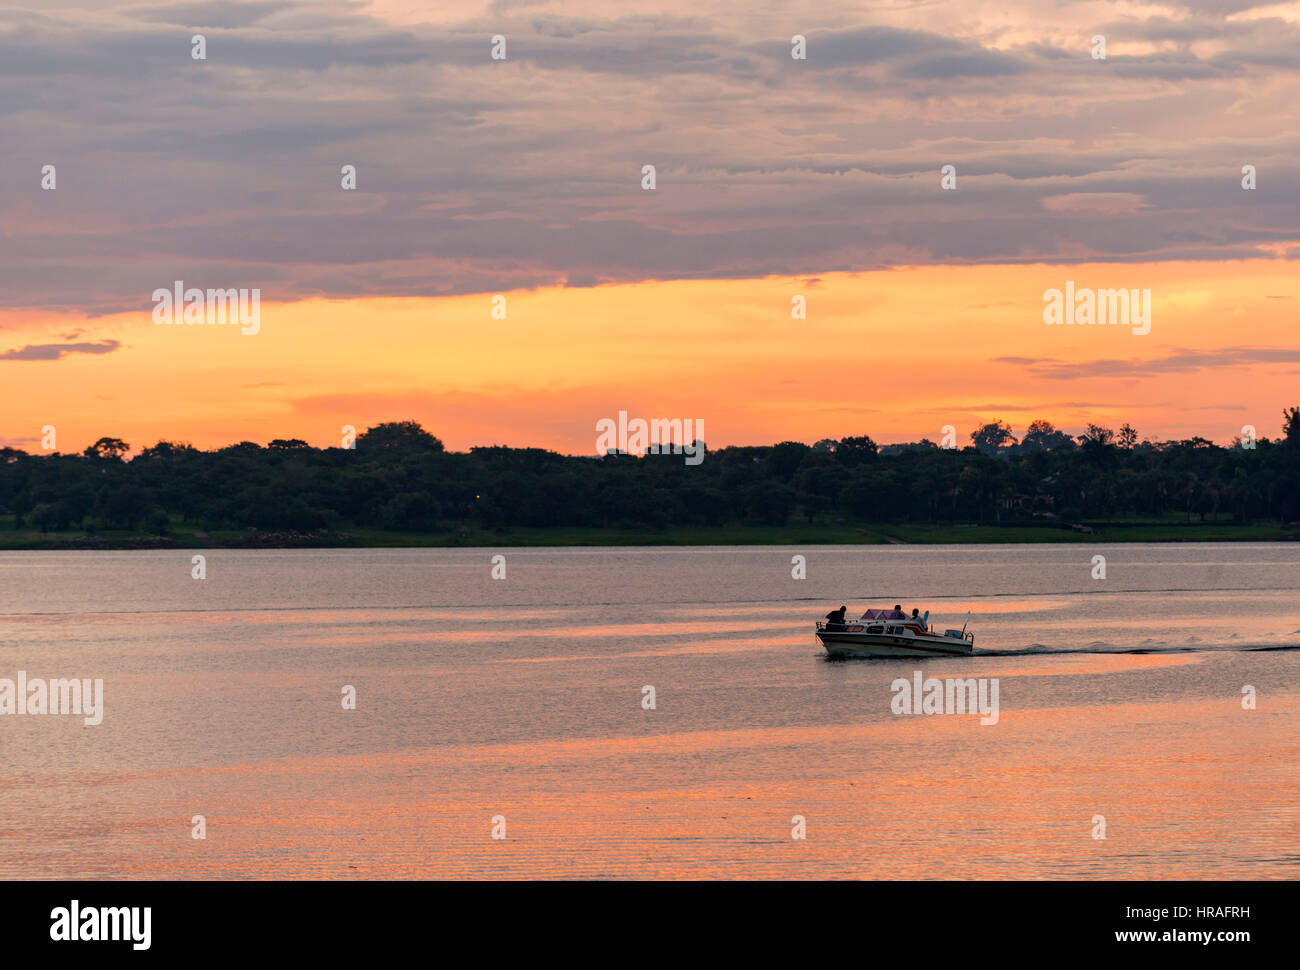 A speedboat enjoys a sunset cruise, Zimbabwe Stock Photo